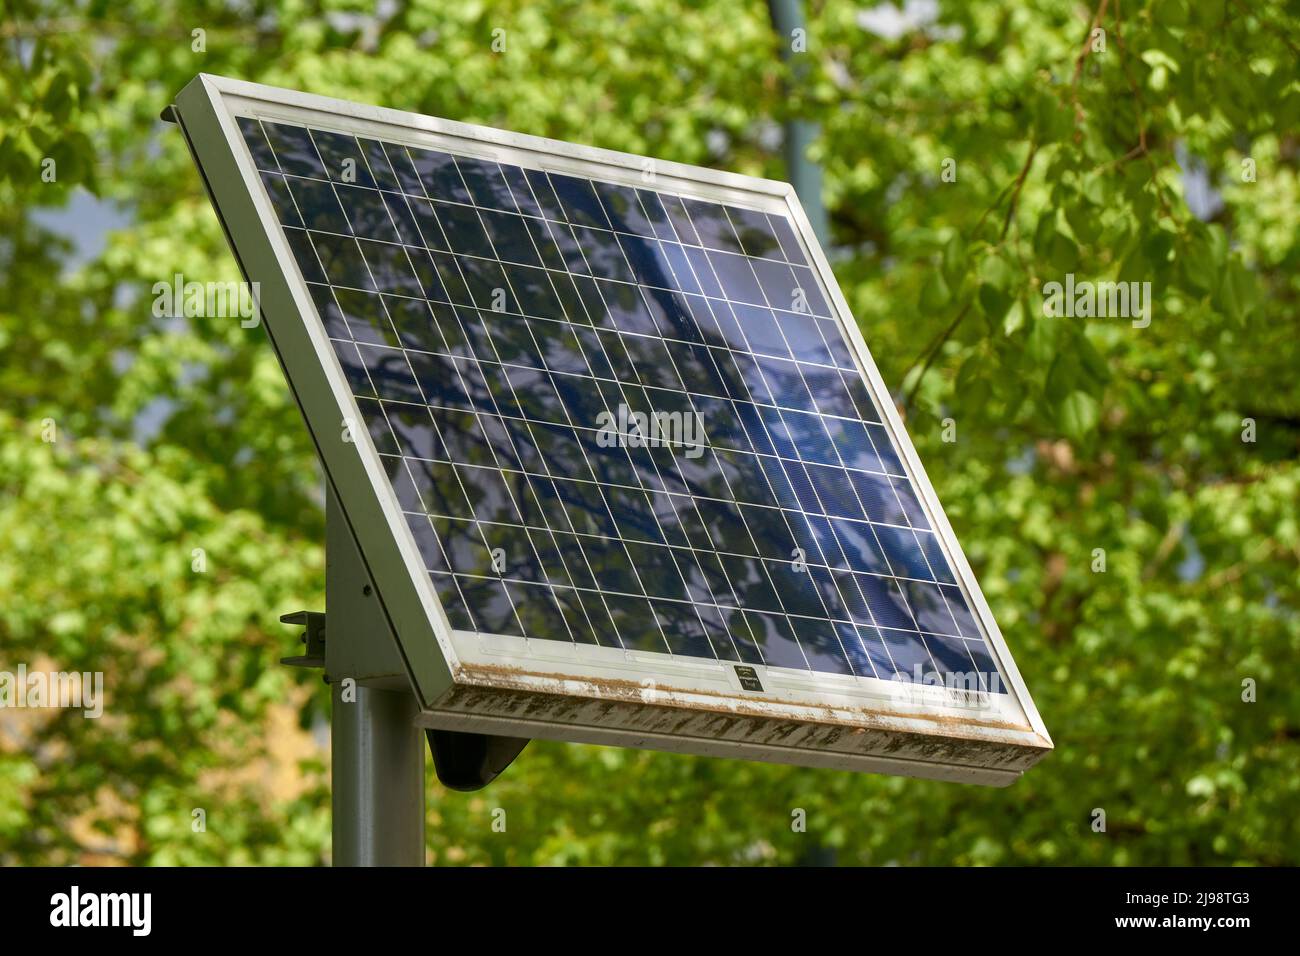 Primer plano de un único panel solar montado sobre un soporte con árboles verdes en el fondo Foto de stock